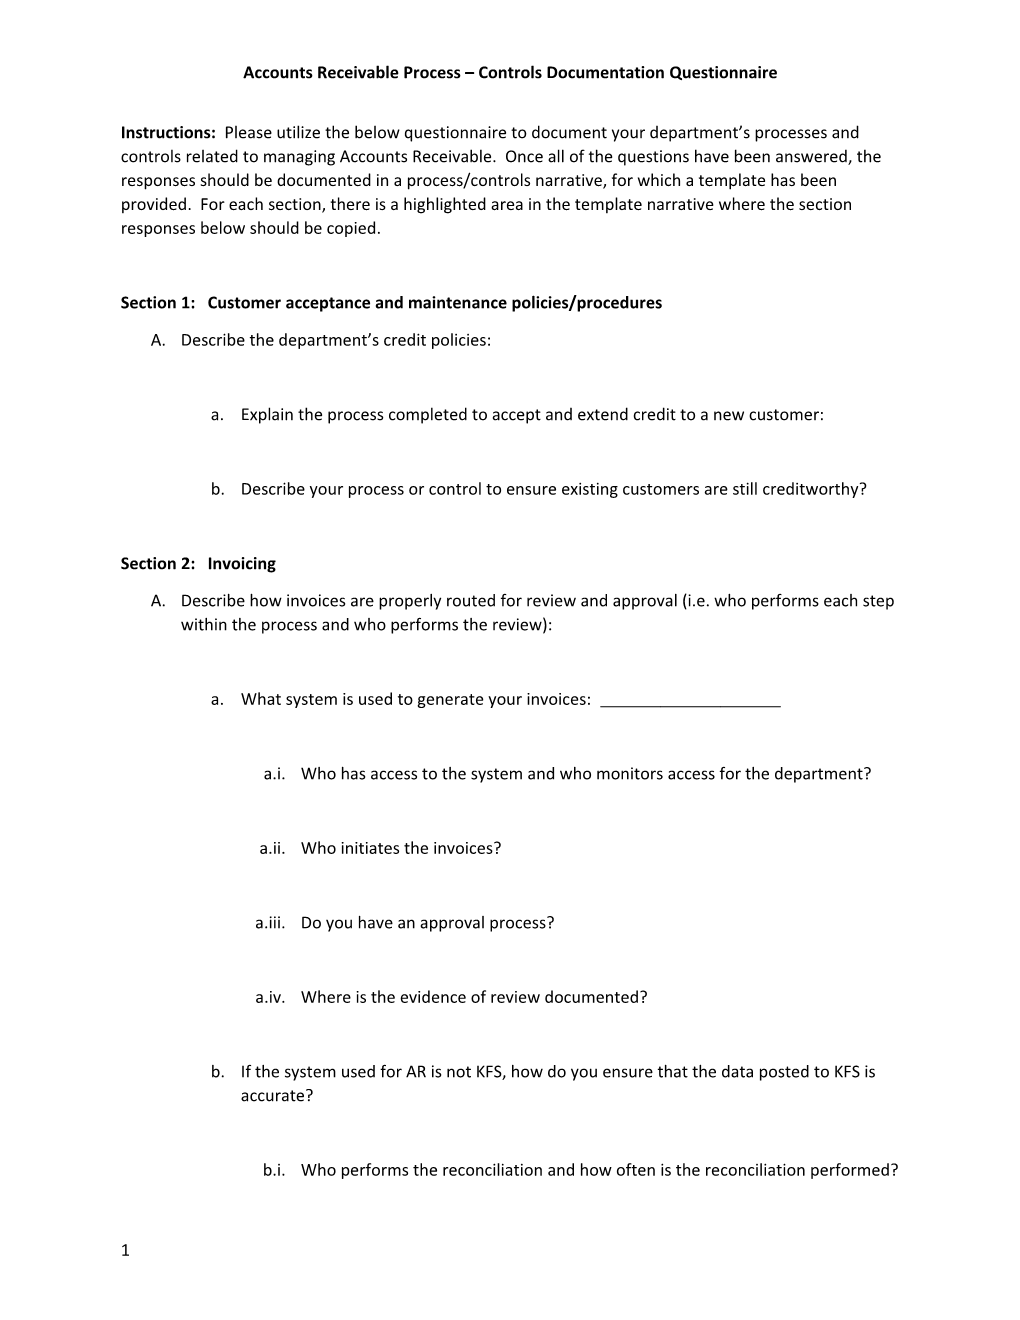 Accounts Receivable Process Controls Documentation Questionnaire